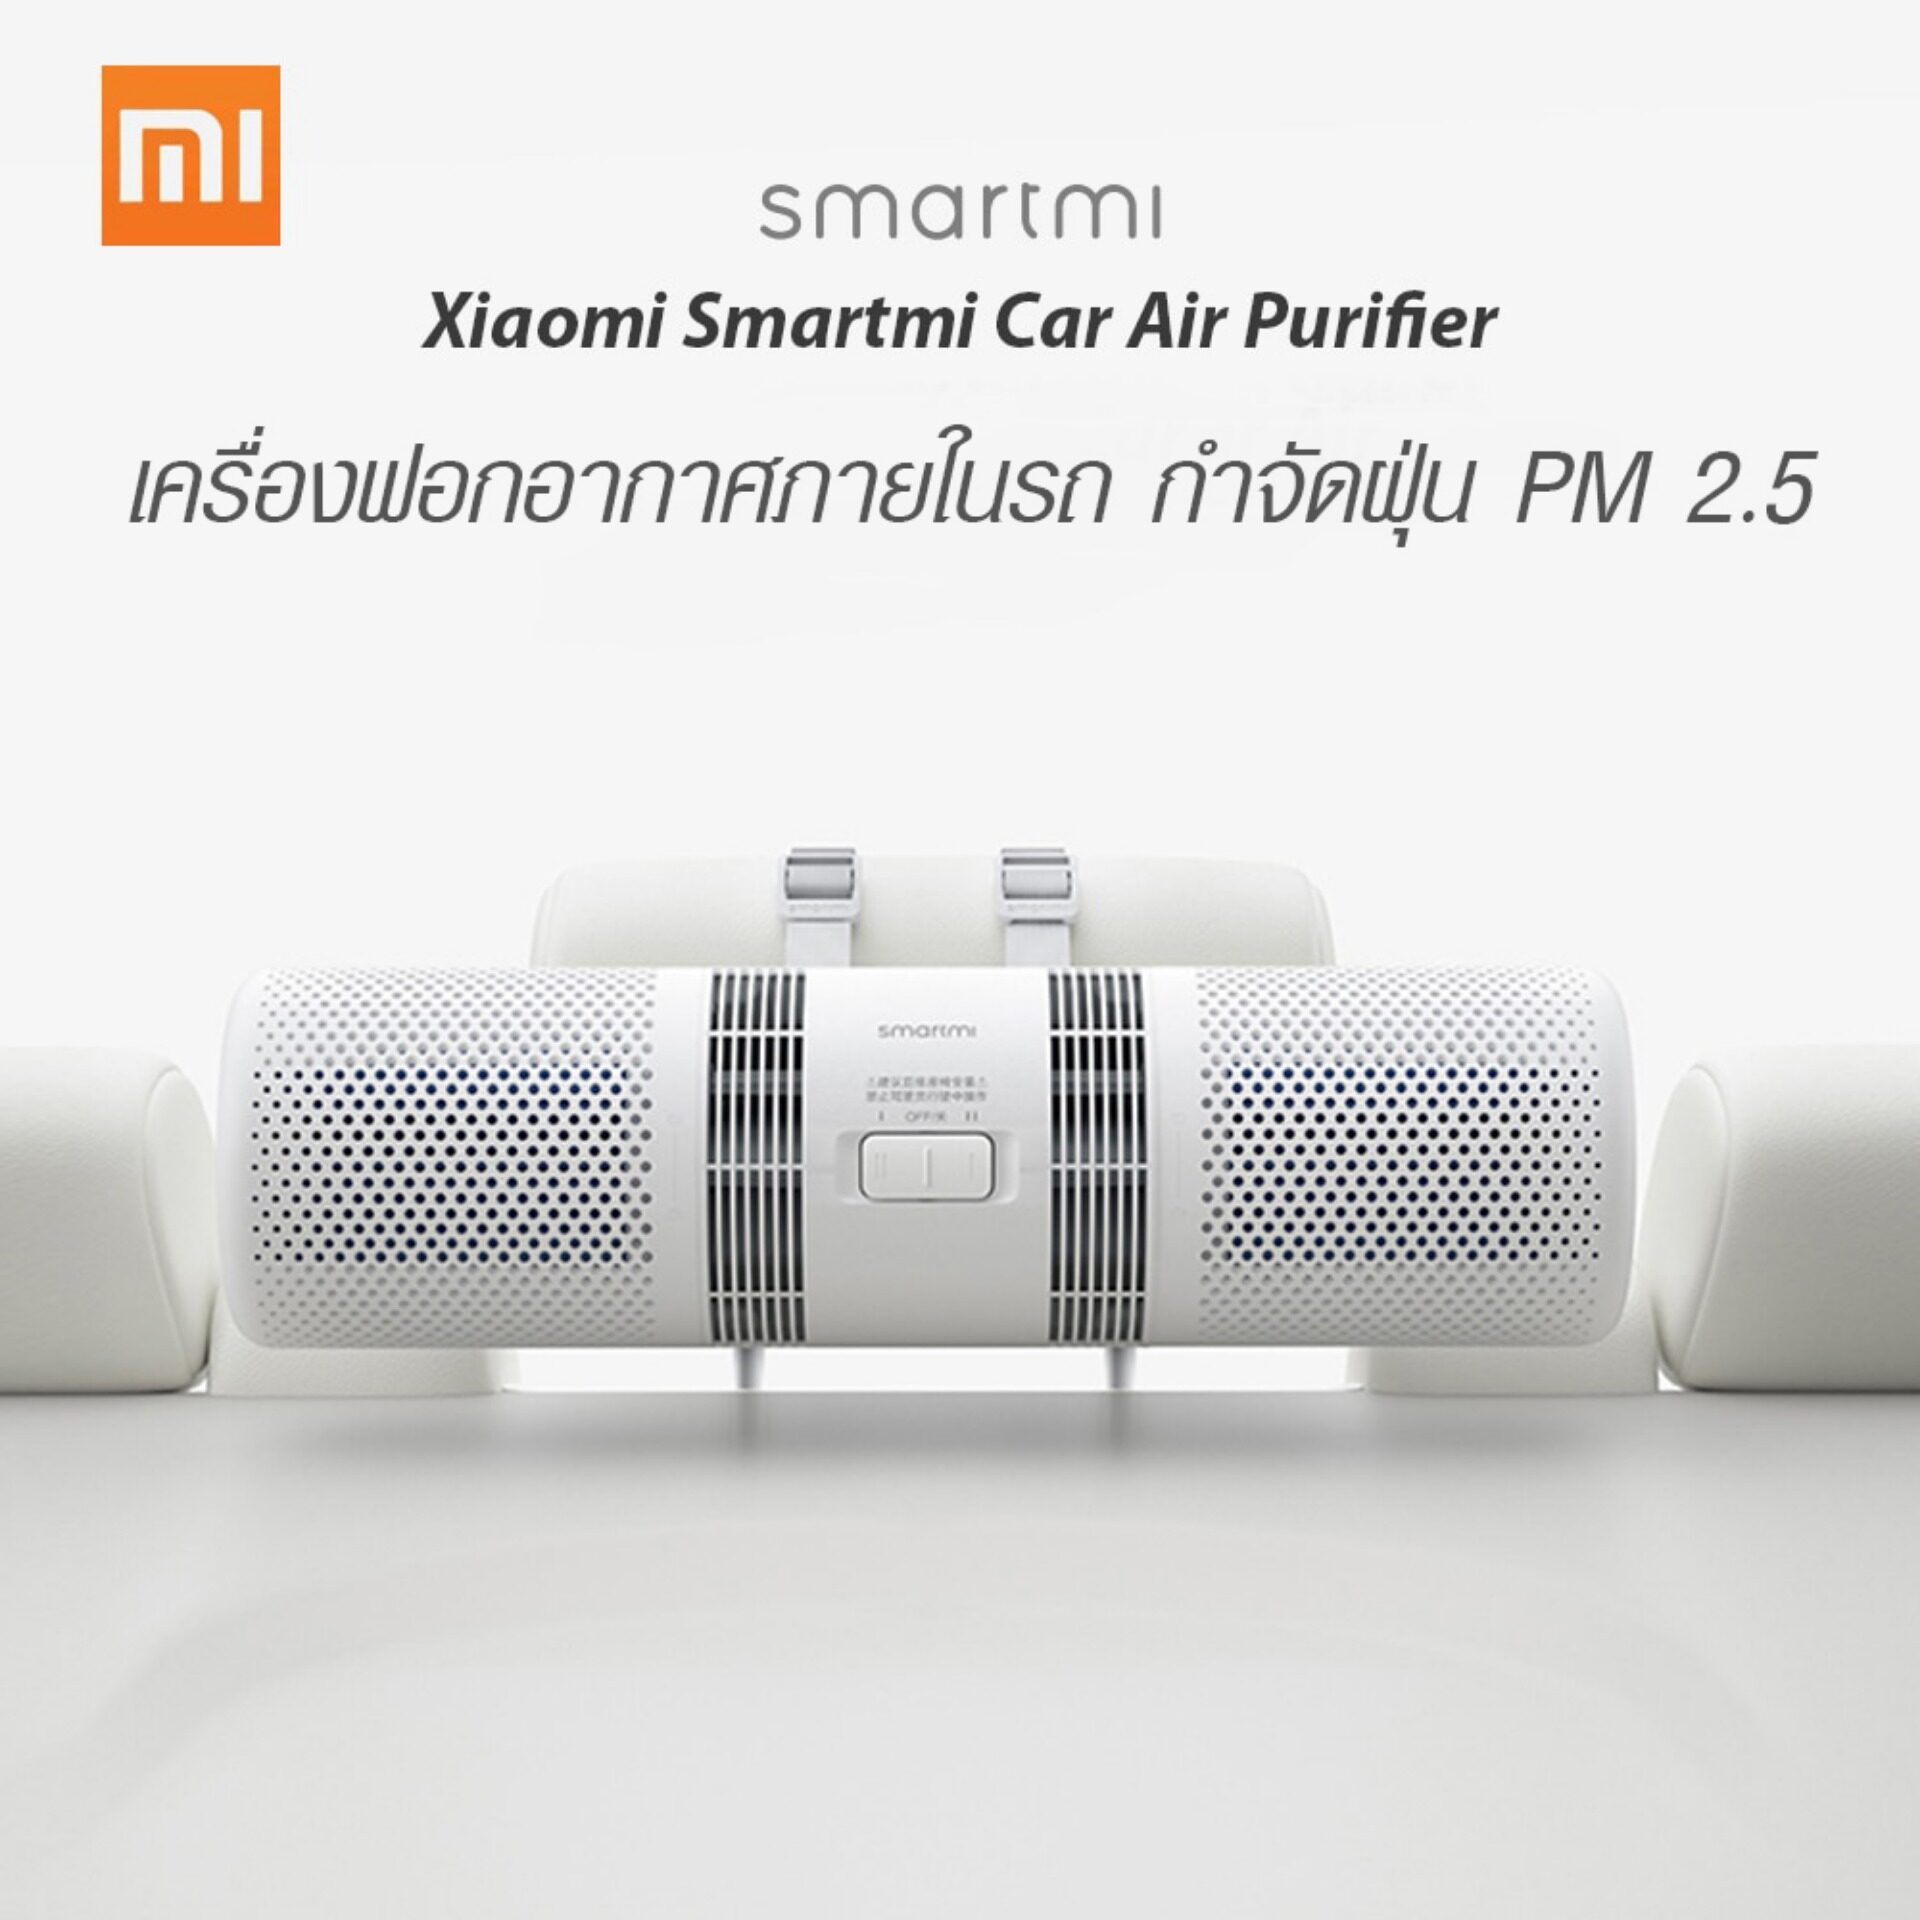 [มีสต๊อกพร้อมส่งจากไทย] Xiaomi Smartmi Car Air Purifier PM2.5 เครื่องฟอกอากาศในรถยนต์ กรองฝุ่นที่มีขนาดเล็กกว่า 0.3-0.5 ไมครอน ได้มากถึง 99.99% เครื่องกรองอากาศ กรองฝุ่น เครื่องฟอกในรถ เครื่องฟอก แท้100%